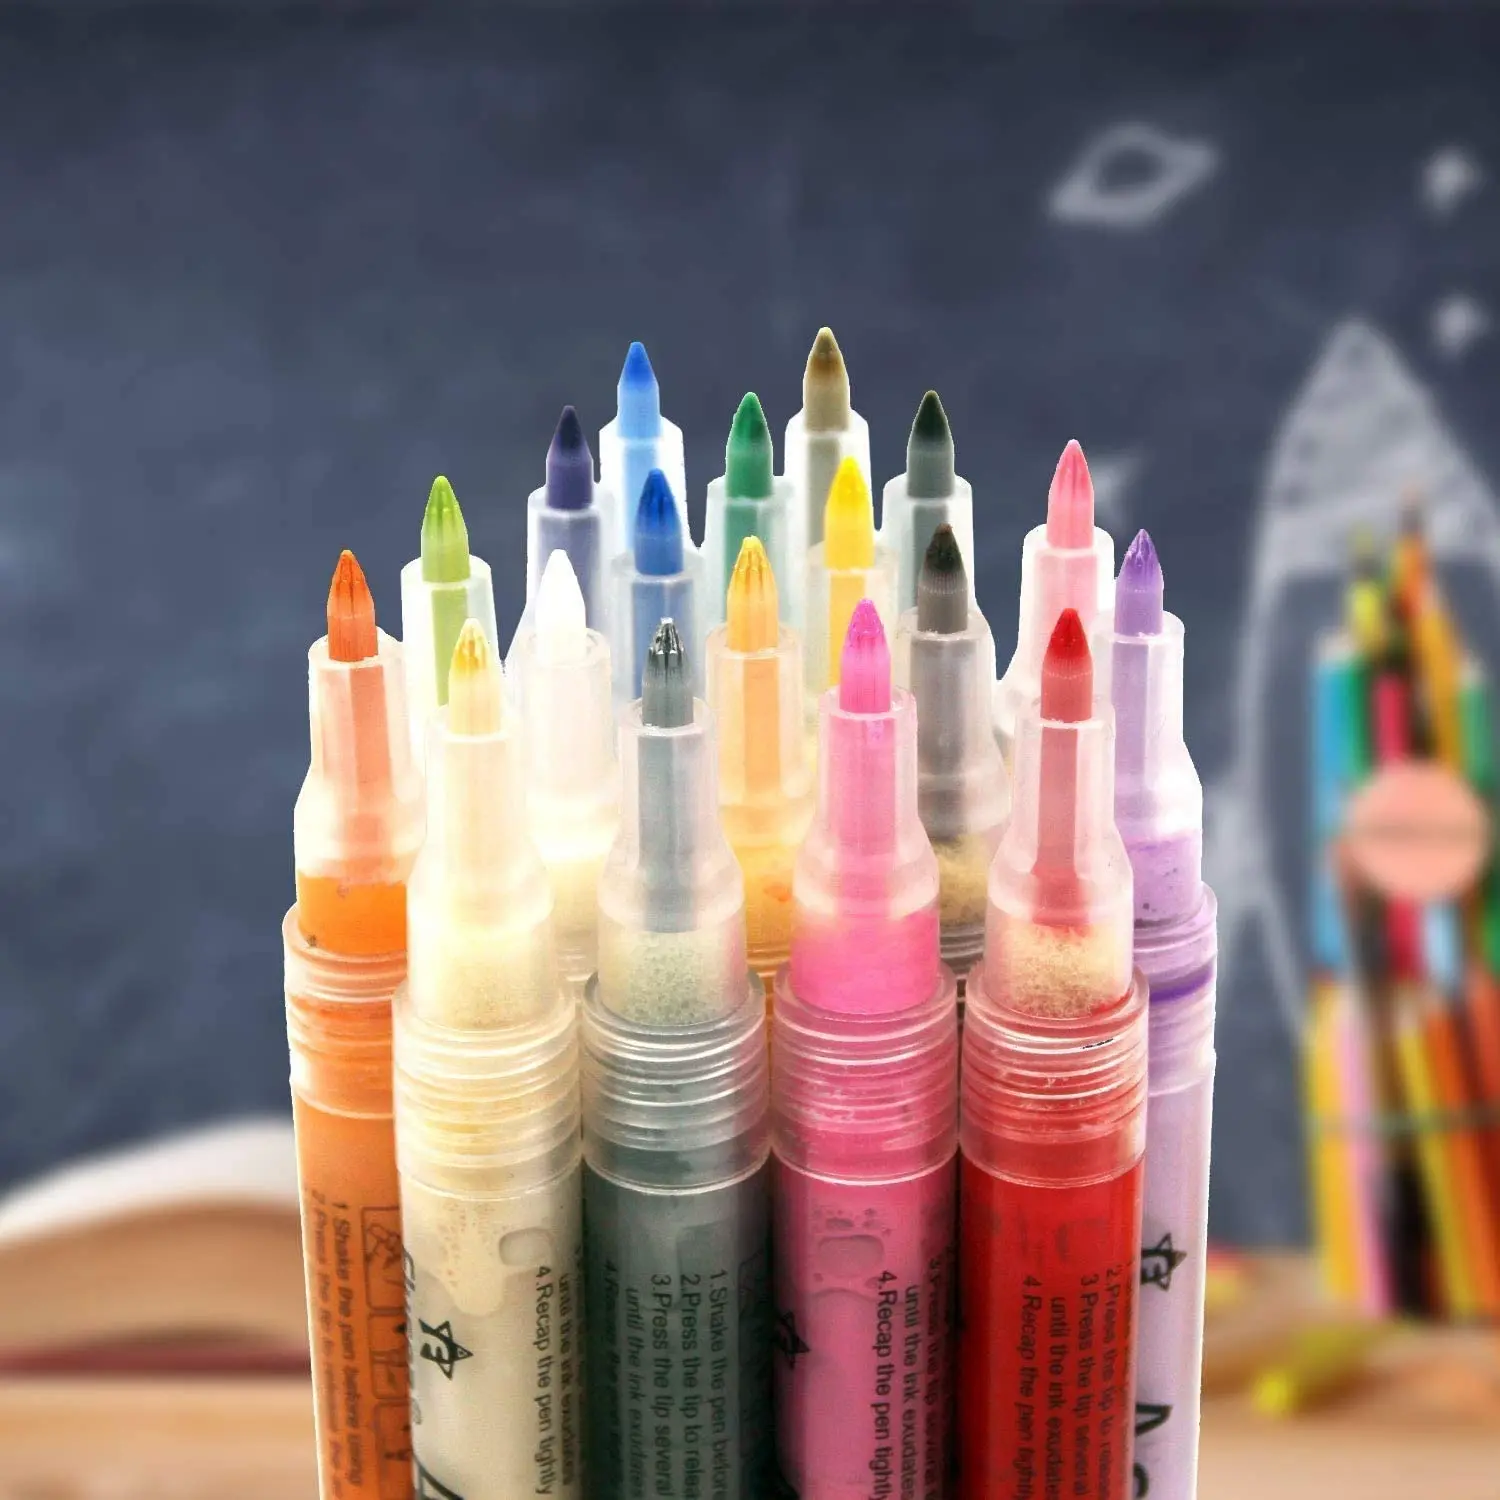 

Acrylic Paint Pen,Optional 1 piece Paint Pens ,DIY Craft Art Waterproof Permanent Paint Marker Pen Set(0.7mm Fine Tip)